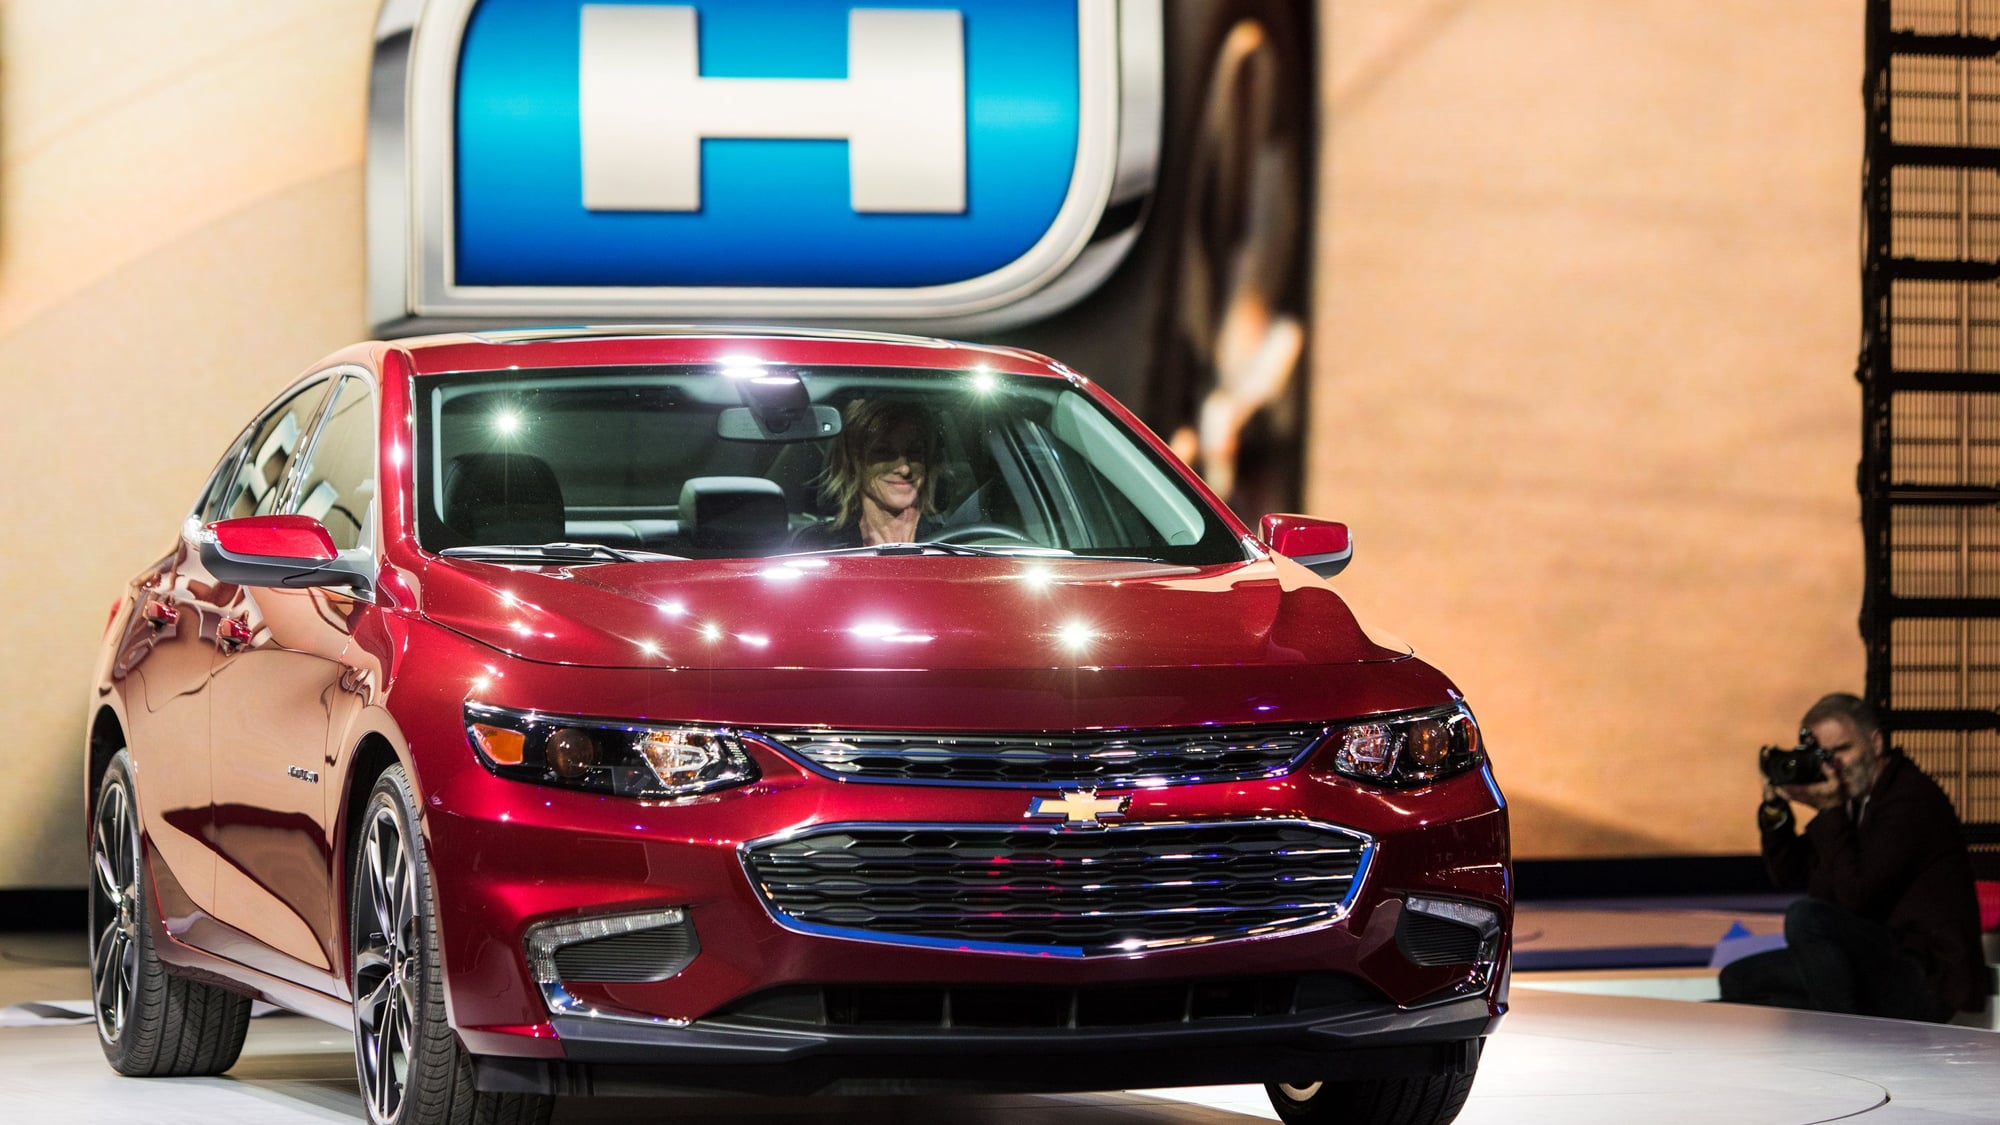 General Motors - Green Car Photos, News, Reviews, and Insights